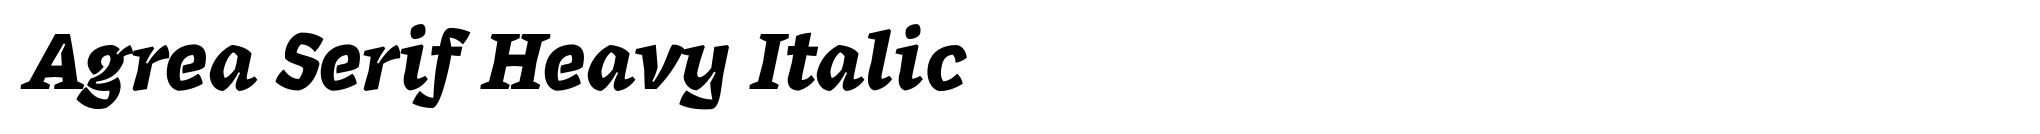 Agrea Serif Heavy Italic image